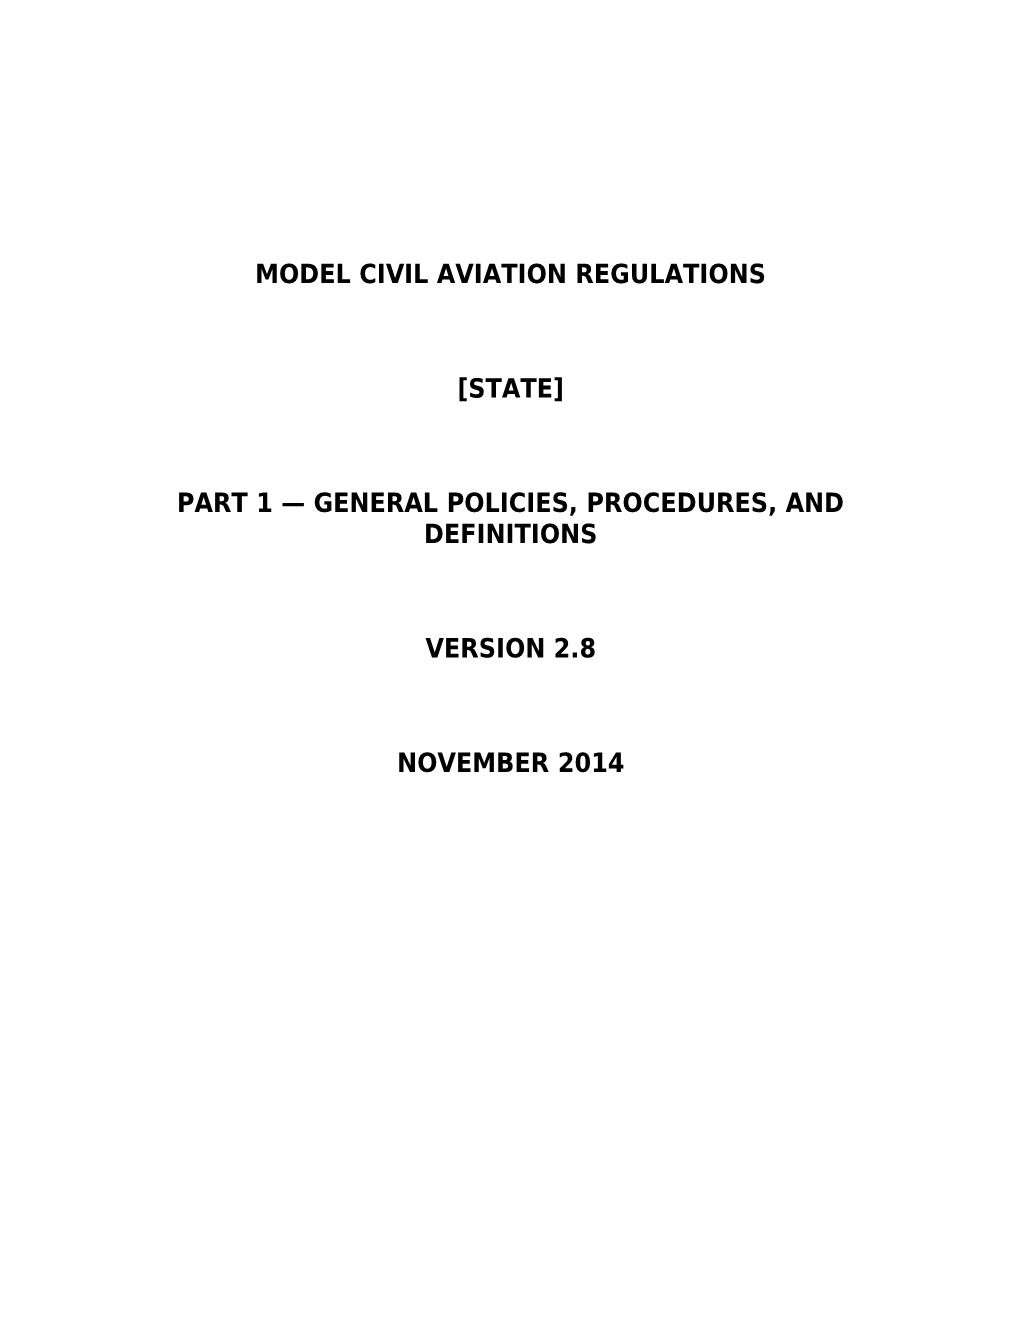 Model Civil Aviation Regulations